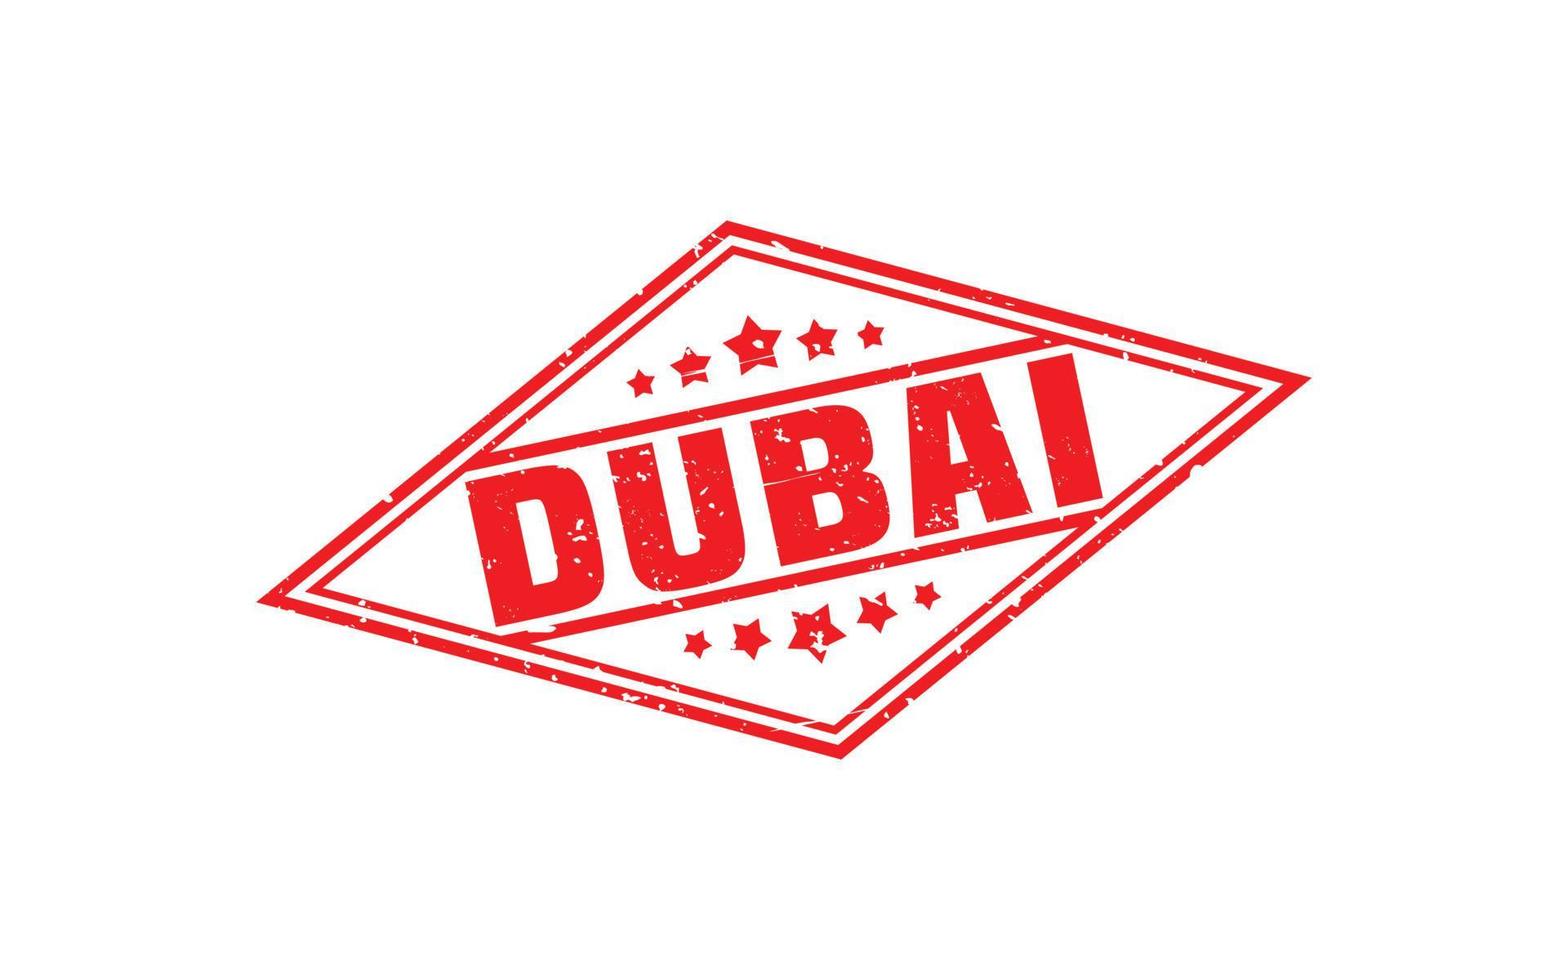 Dubai postzegel rubber met grunge stijl Aan wit achtergrond vector